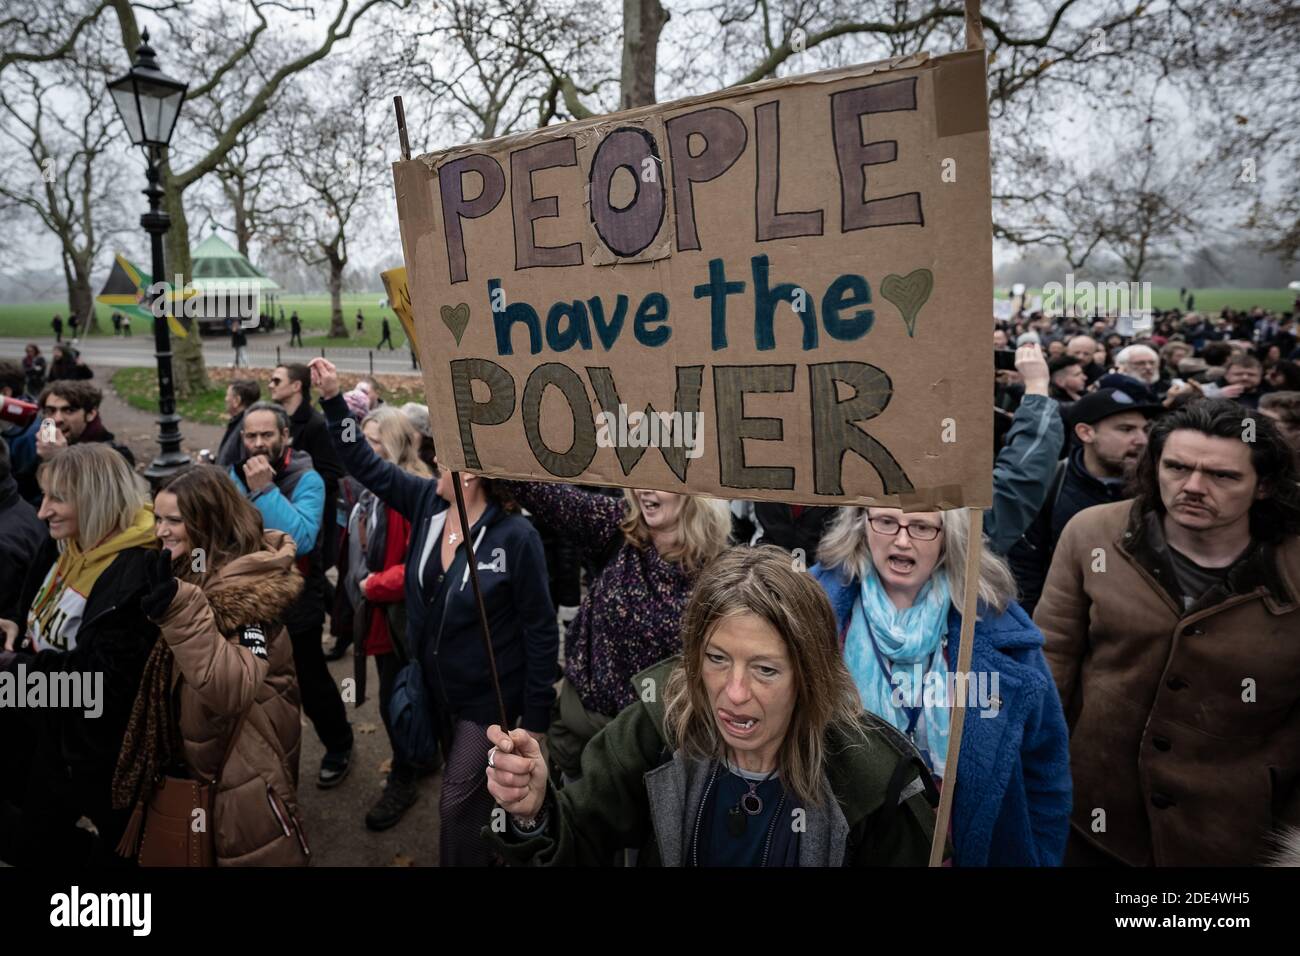 Coronavirus: Enfrentamientos y detenciones durante manifestaciones contra el bloqueo mientras los manifestantes continúan rebelándose contra las normas de bloqueo de las 19:19 en Londres. Foto de stock